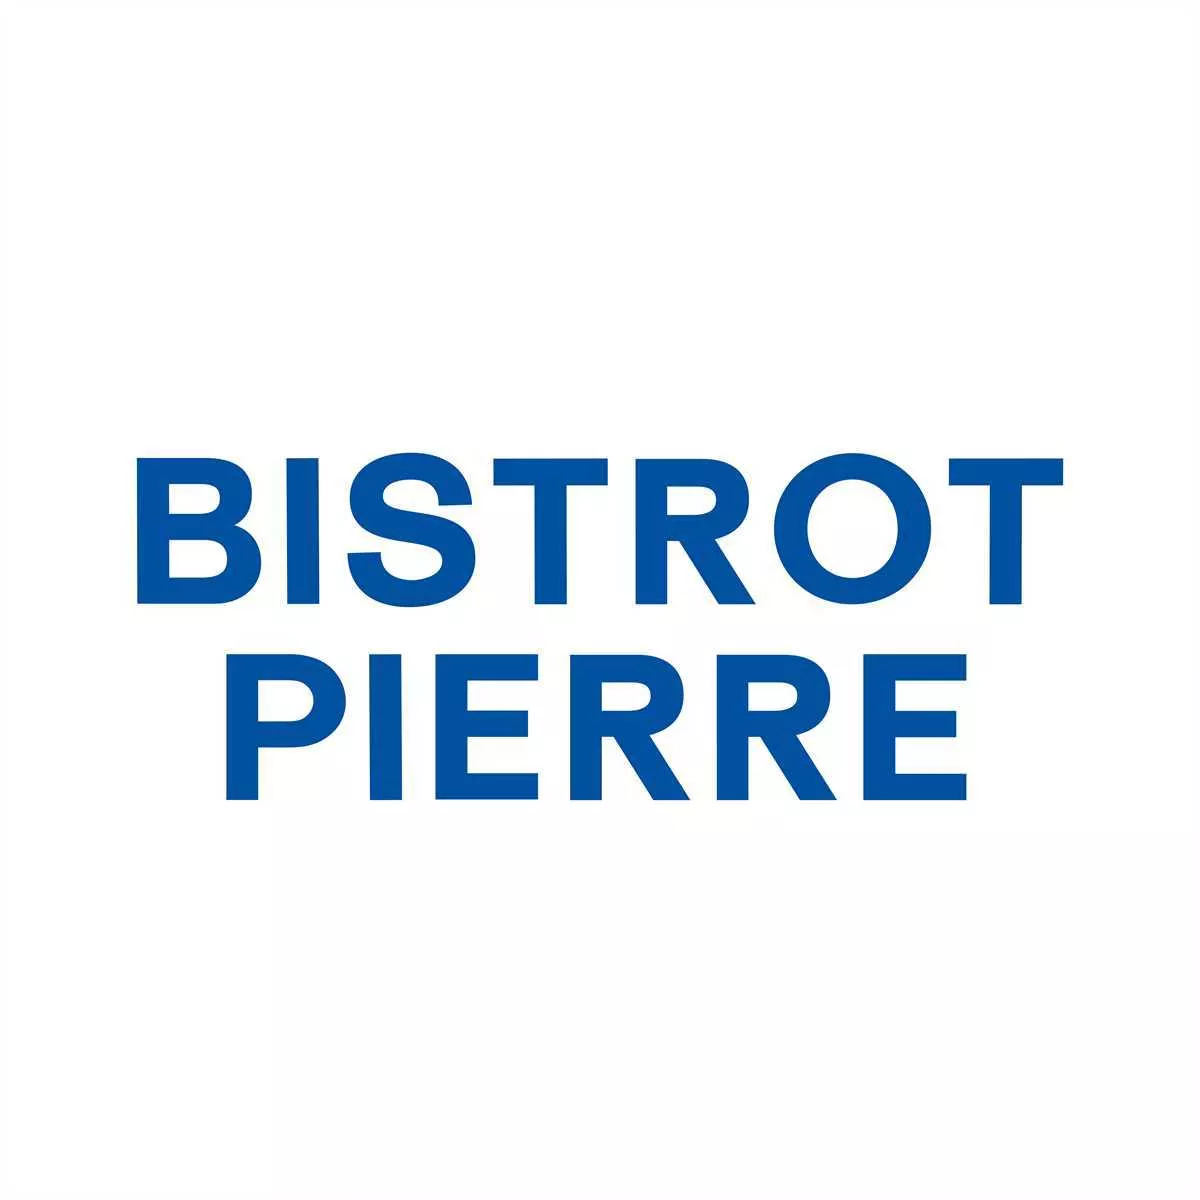 Bistrot Pierre